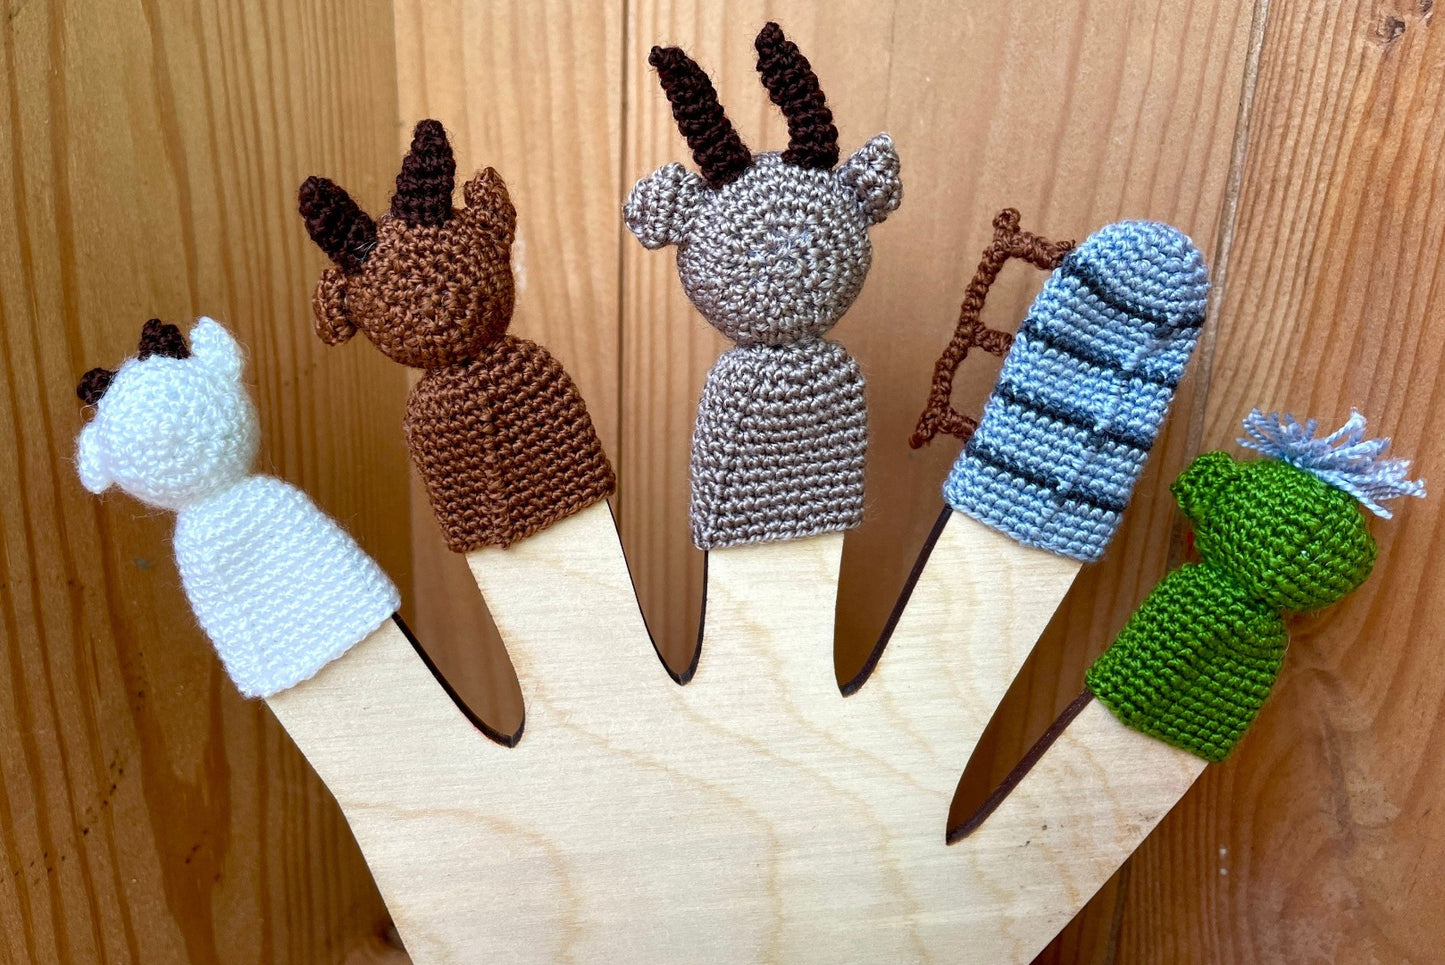 Three Billy Goats Gruff Finger Puppet Set